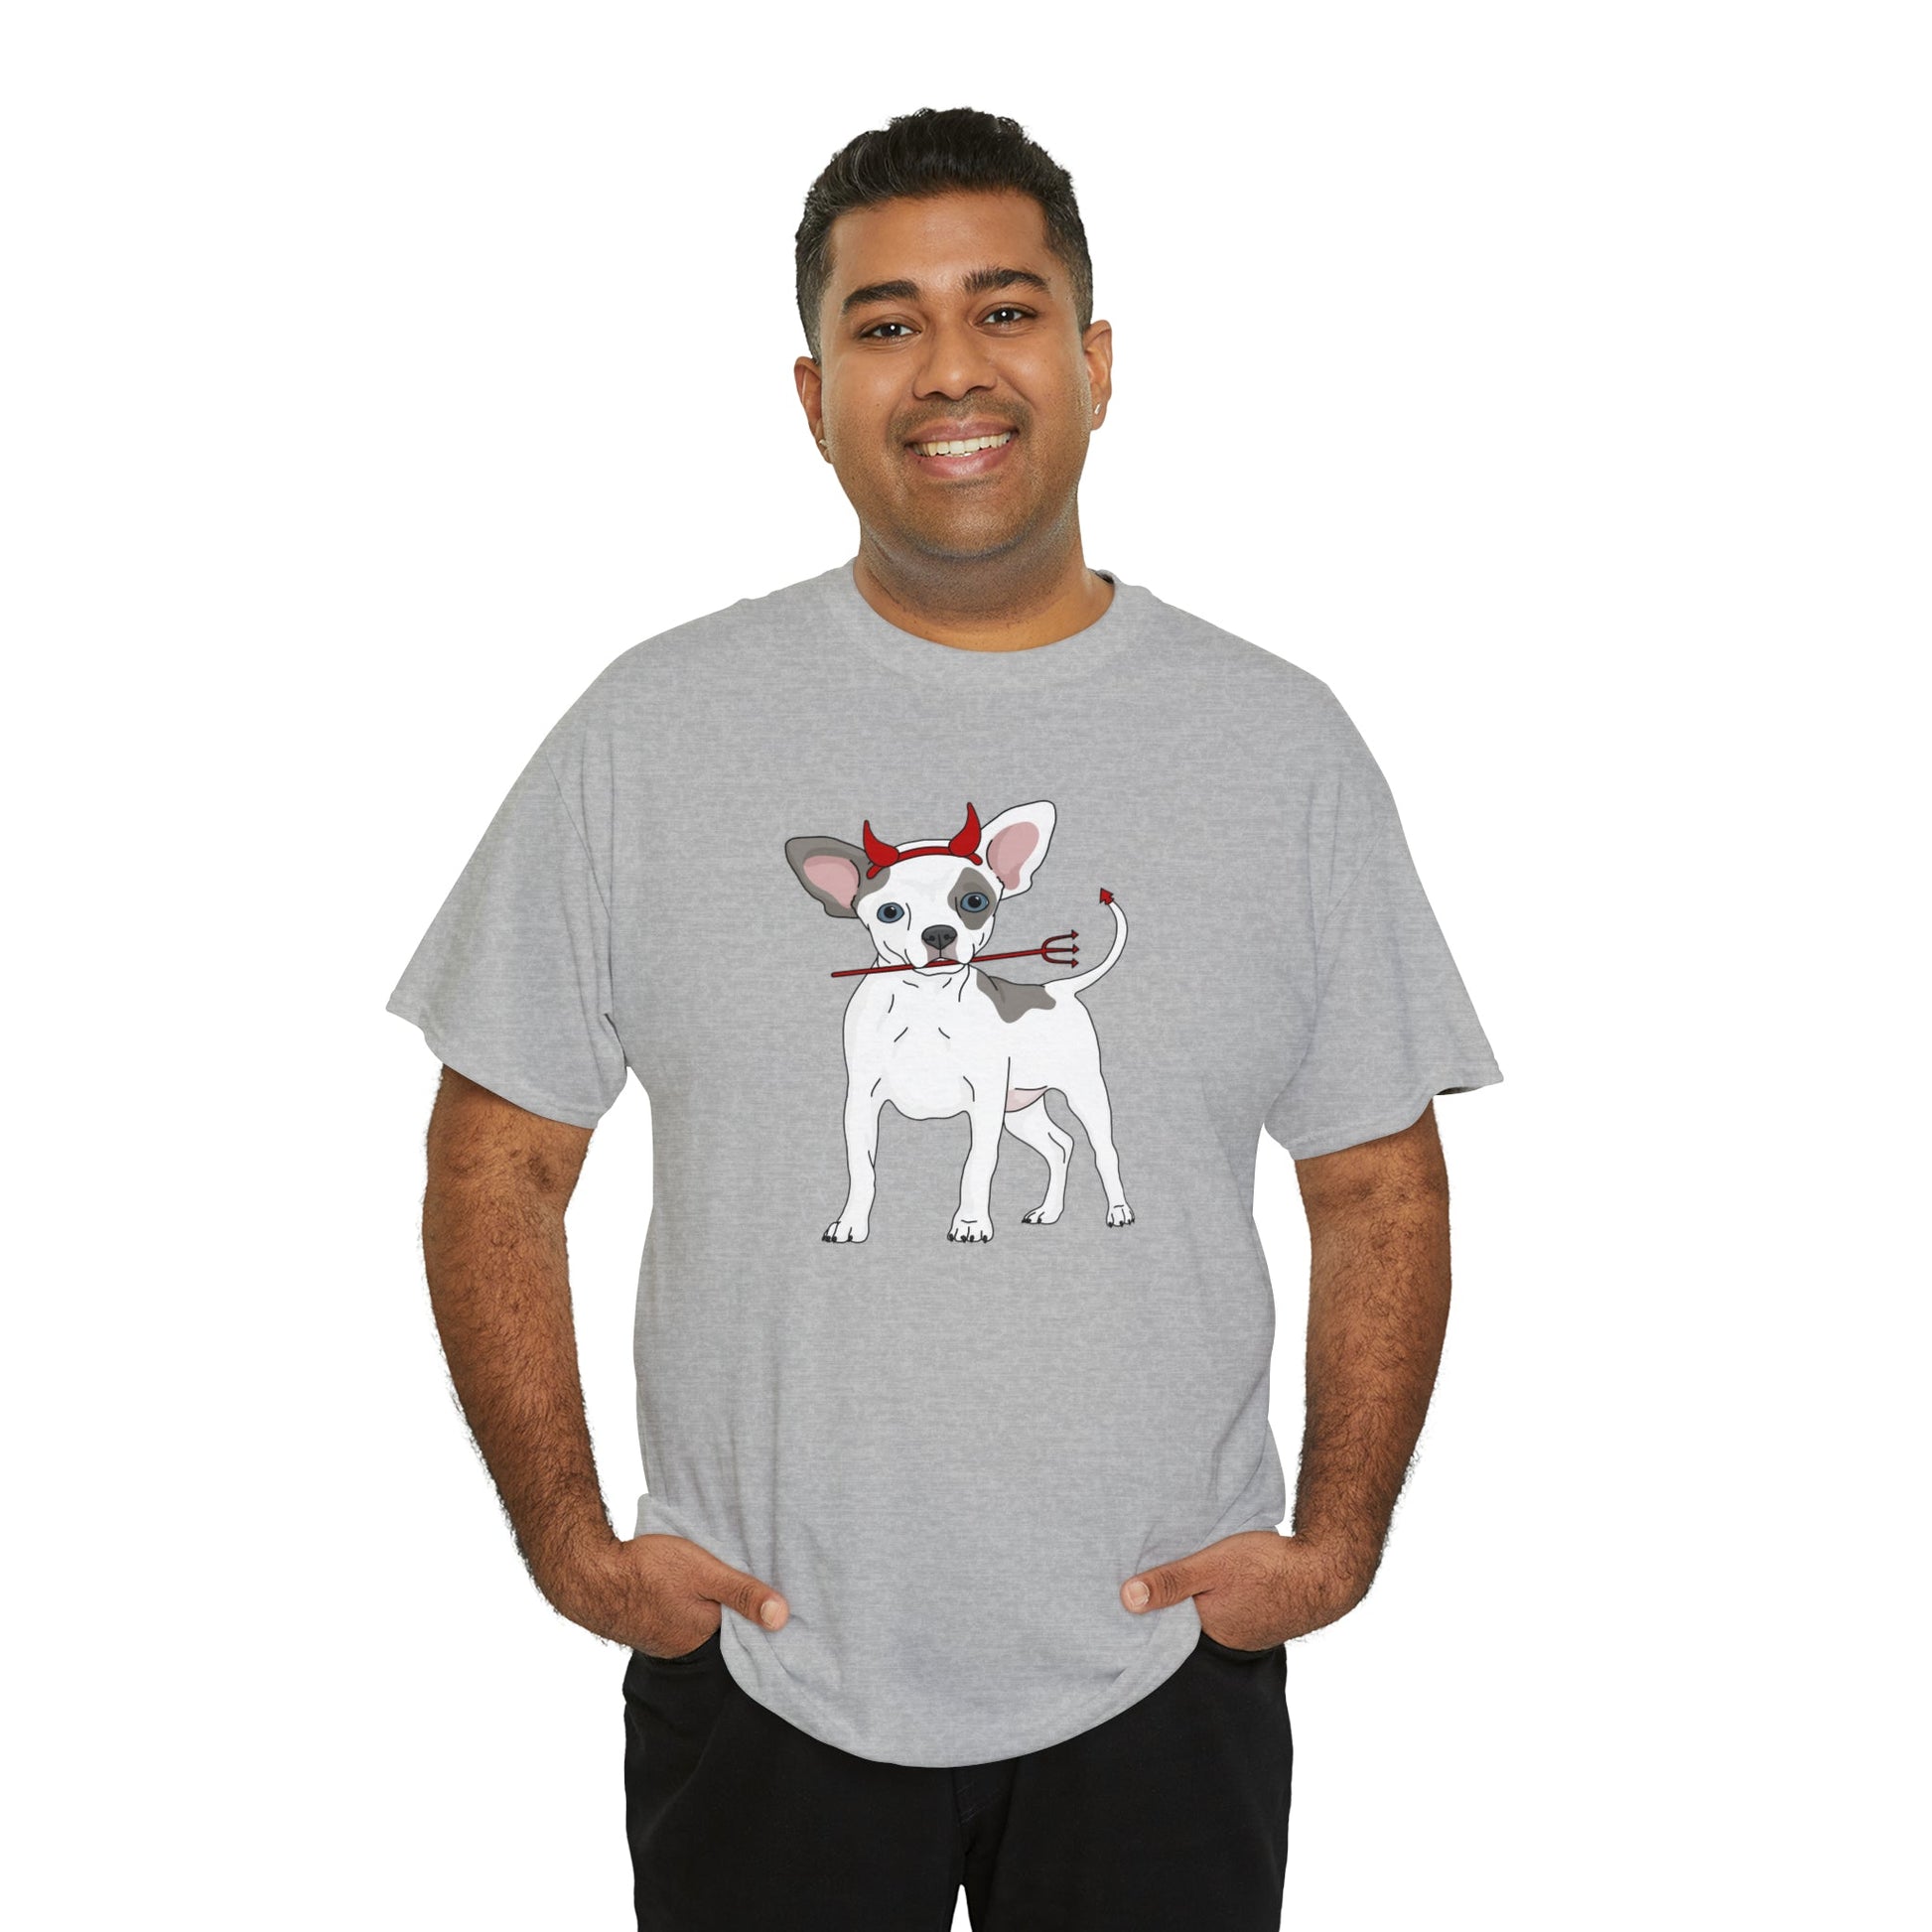 Devil Puppy | T-shirt - Detezi Designs-22714233896843956626